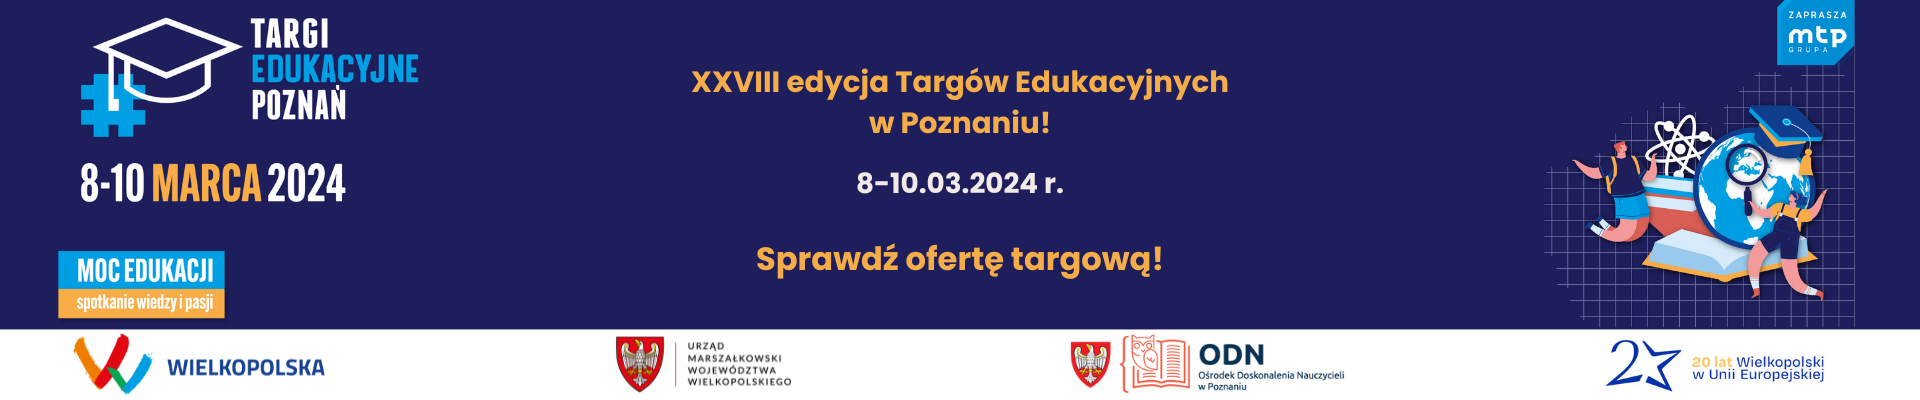 Kolorowa grafika prezentująca wydarzenie pod nazwą Targi Edukacyjne, które odbędą się 8-10 marca 2024 roku. Kliknięcie na grafikę otwiera stronę internetową Targów Edukacyjnych w Poznaniu.